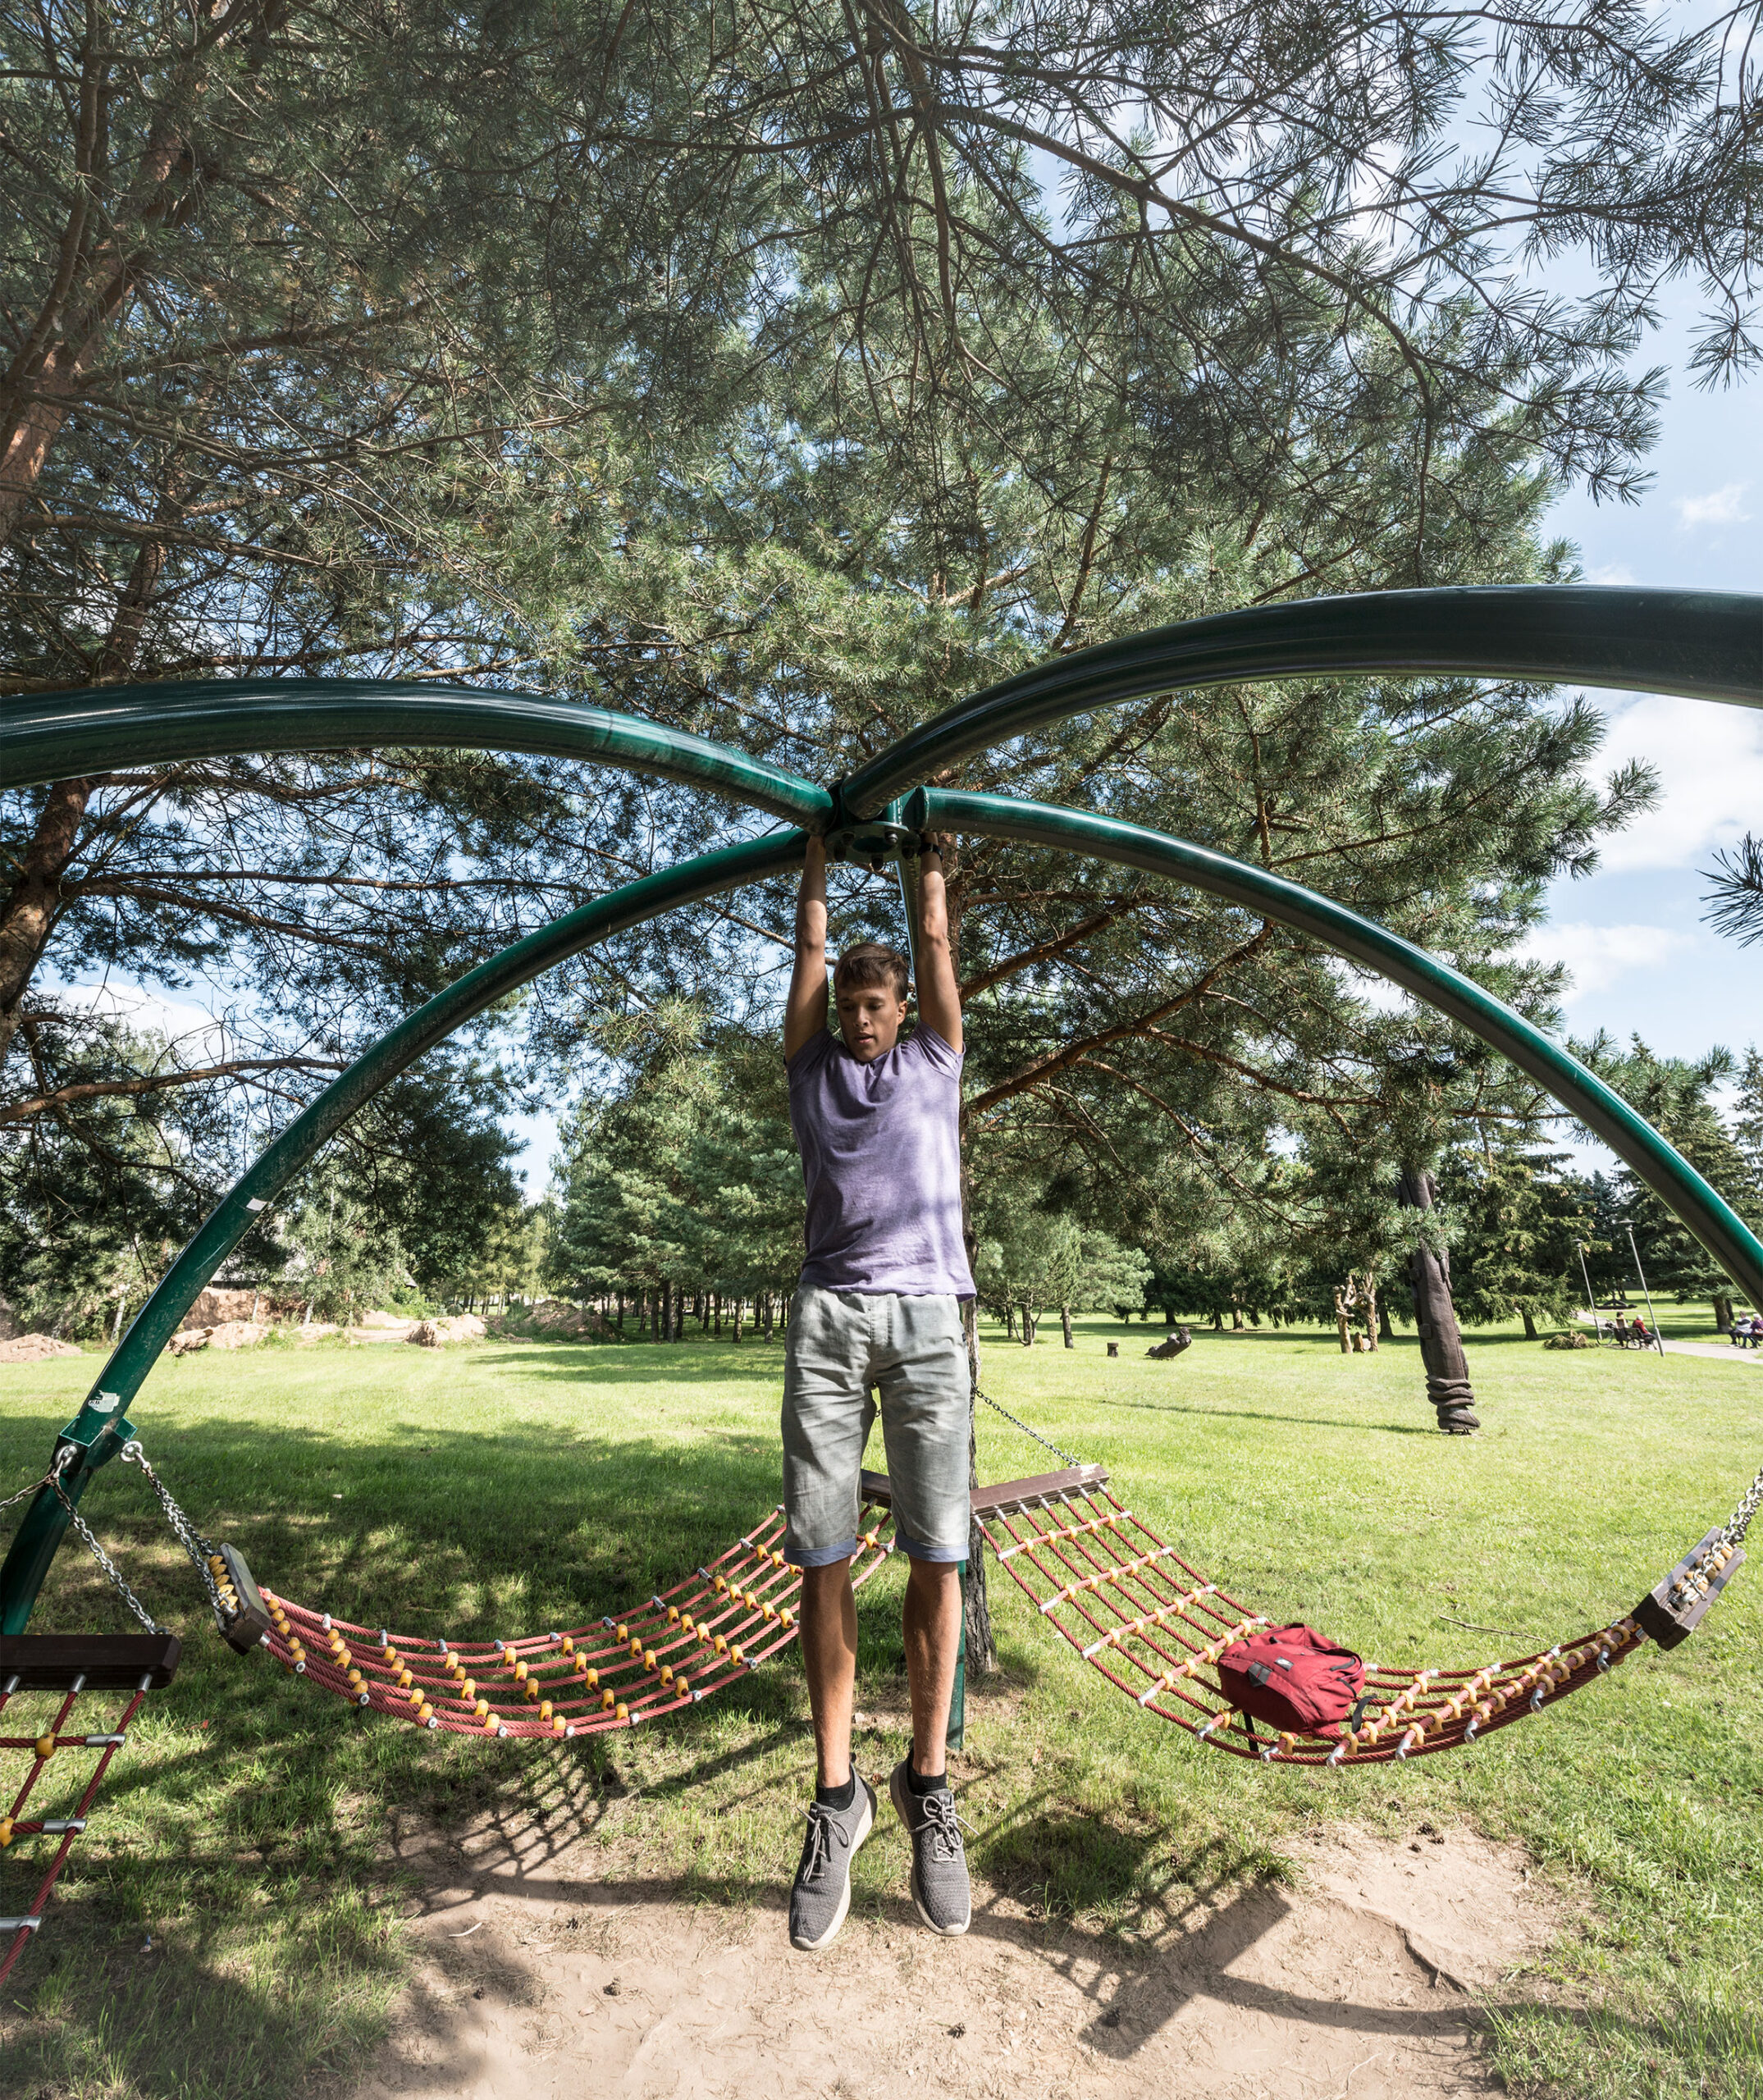 Ein junger Mann hängt an einer gebogenen Metallstange in einem Park mit Bäumen und Hängematten im Hintergrund.